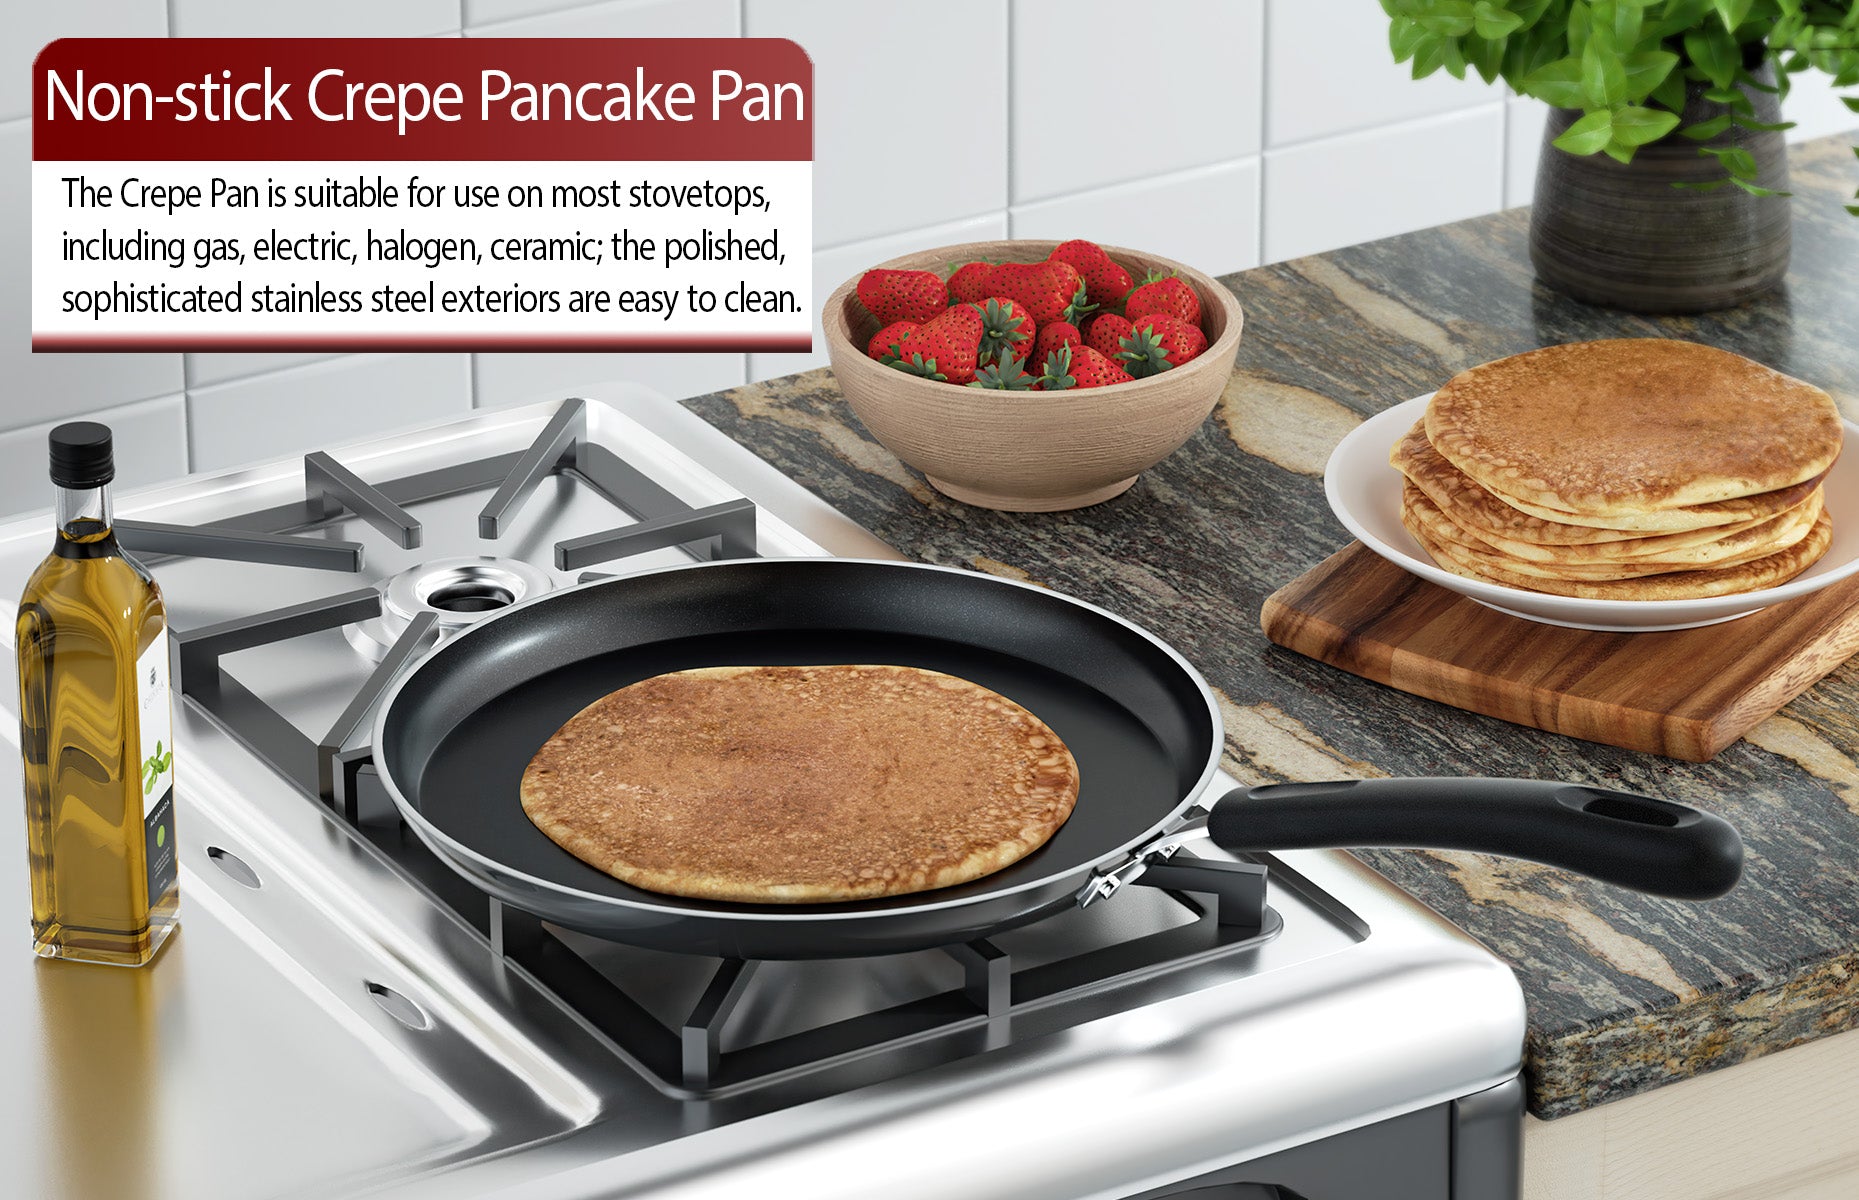 Pancake Maker Griddle